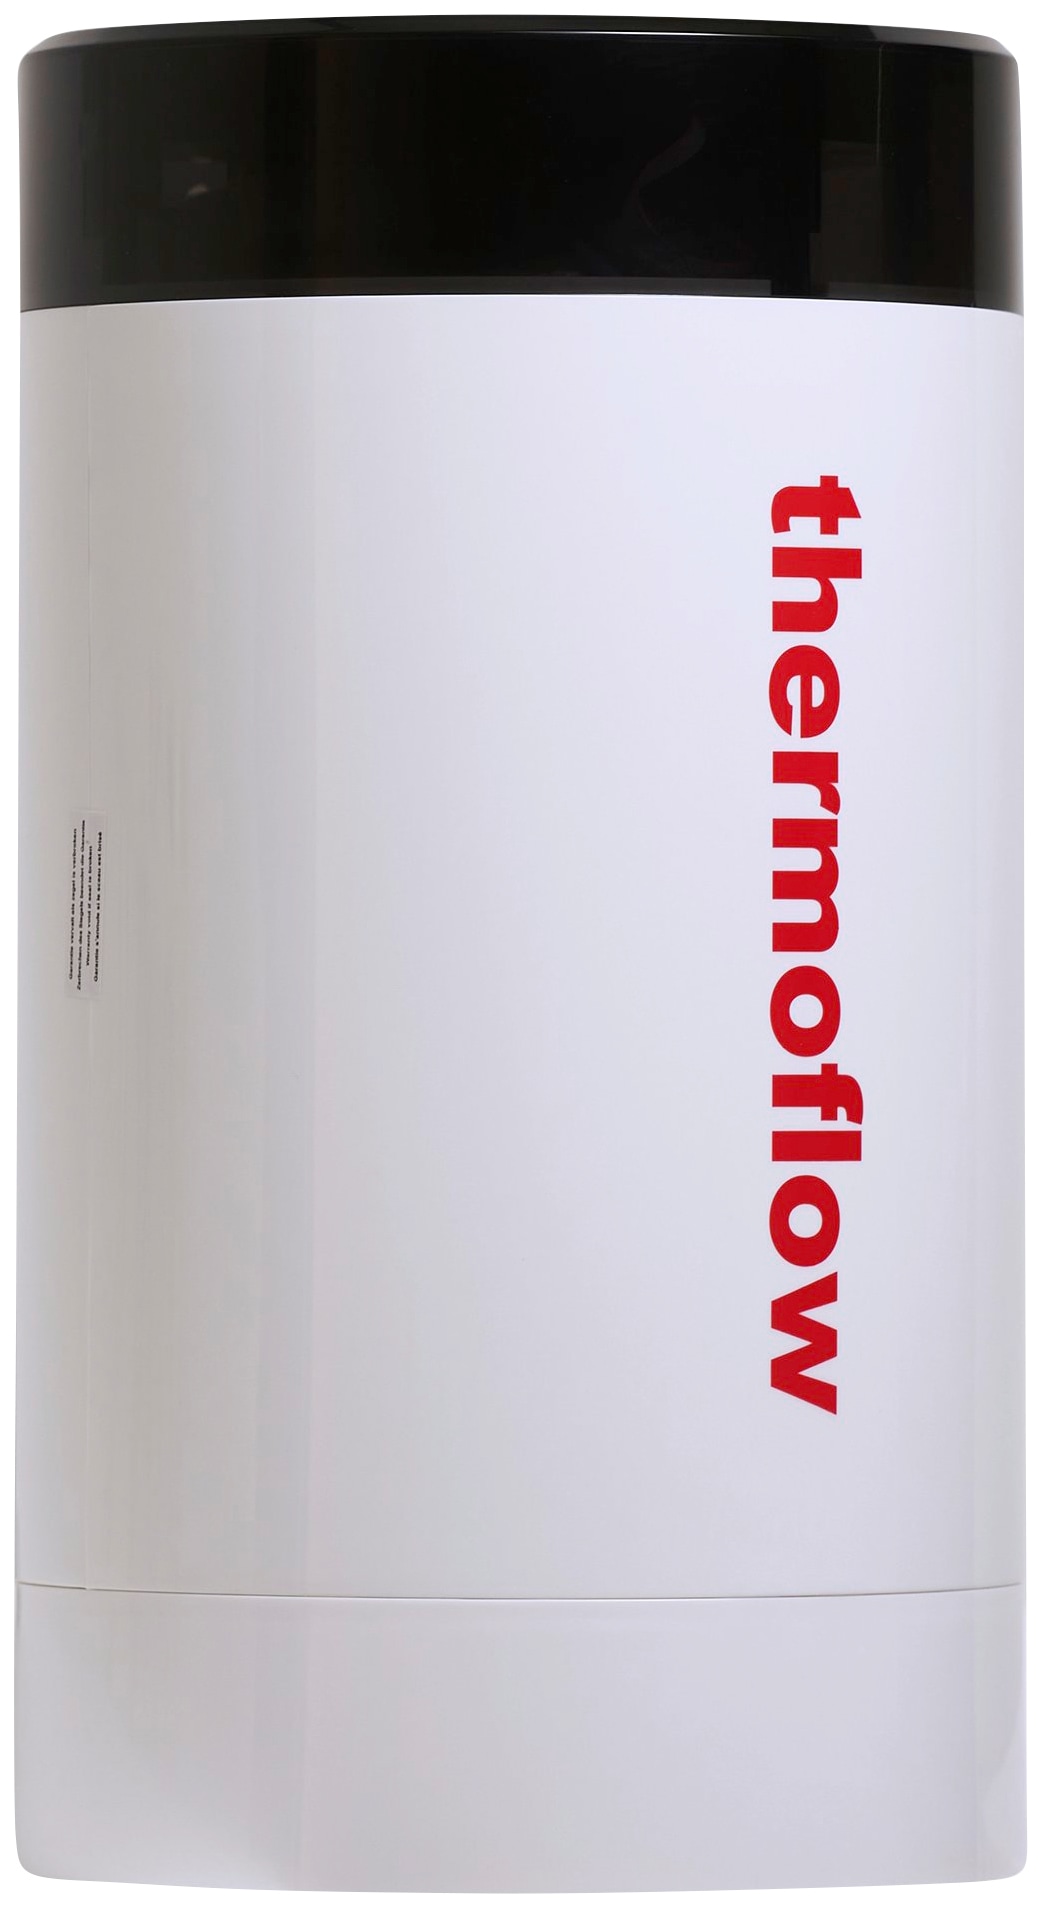 Thermoflow Untertisch-Trinkwassersystem »Thermoflow 100E«, (Komplett-Set), 5 Liter Boiler inklusiver Armatur